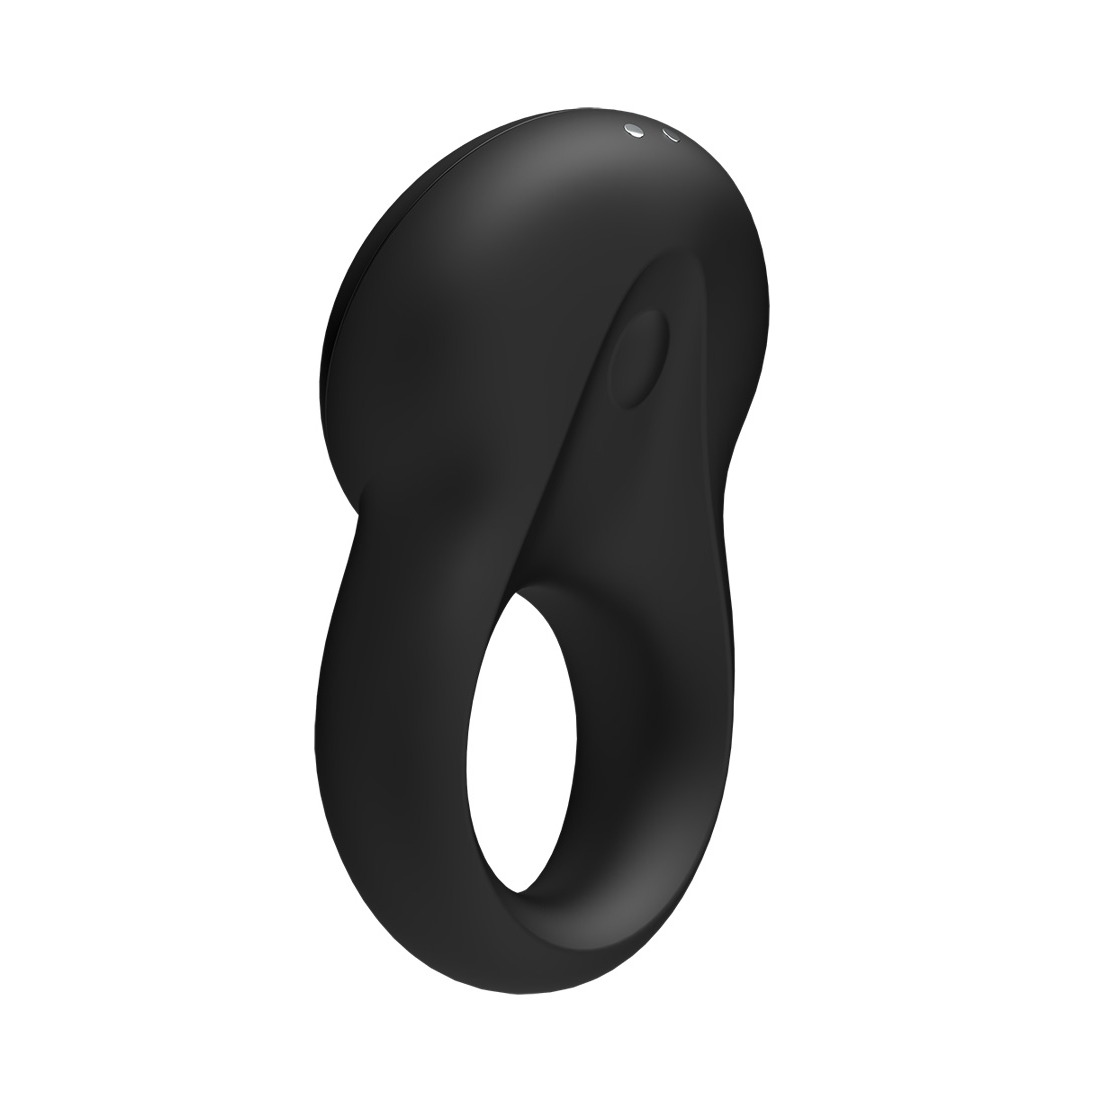 Signet Ring Vibrator - Black